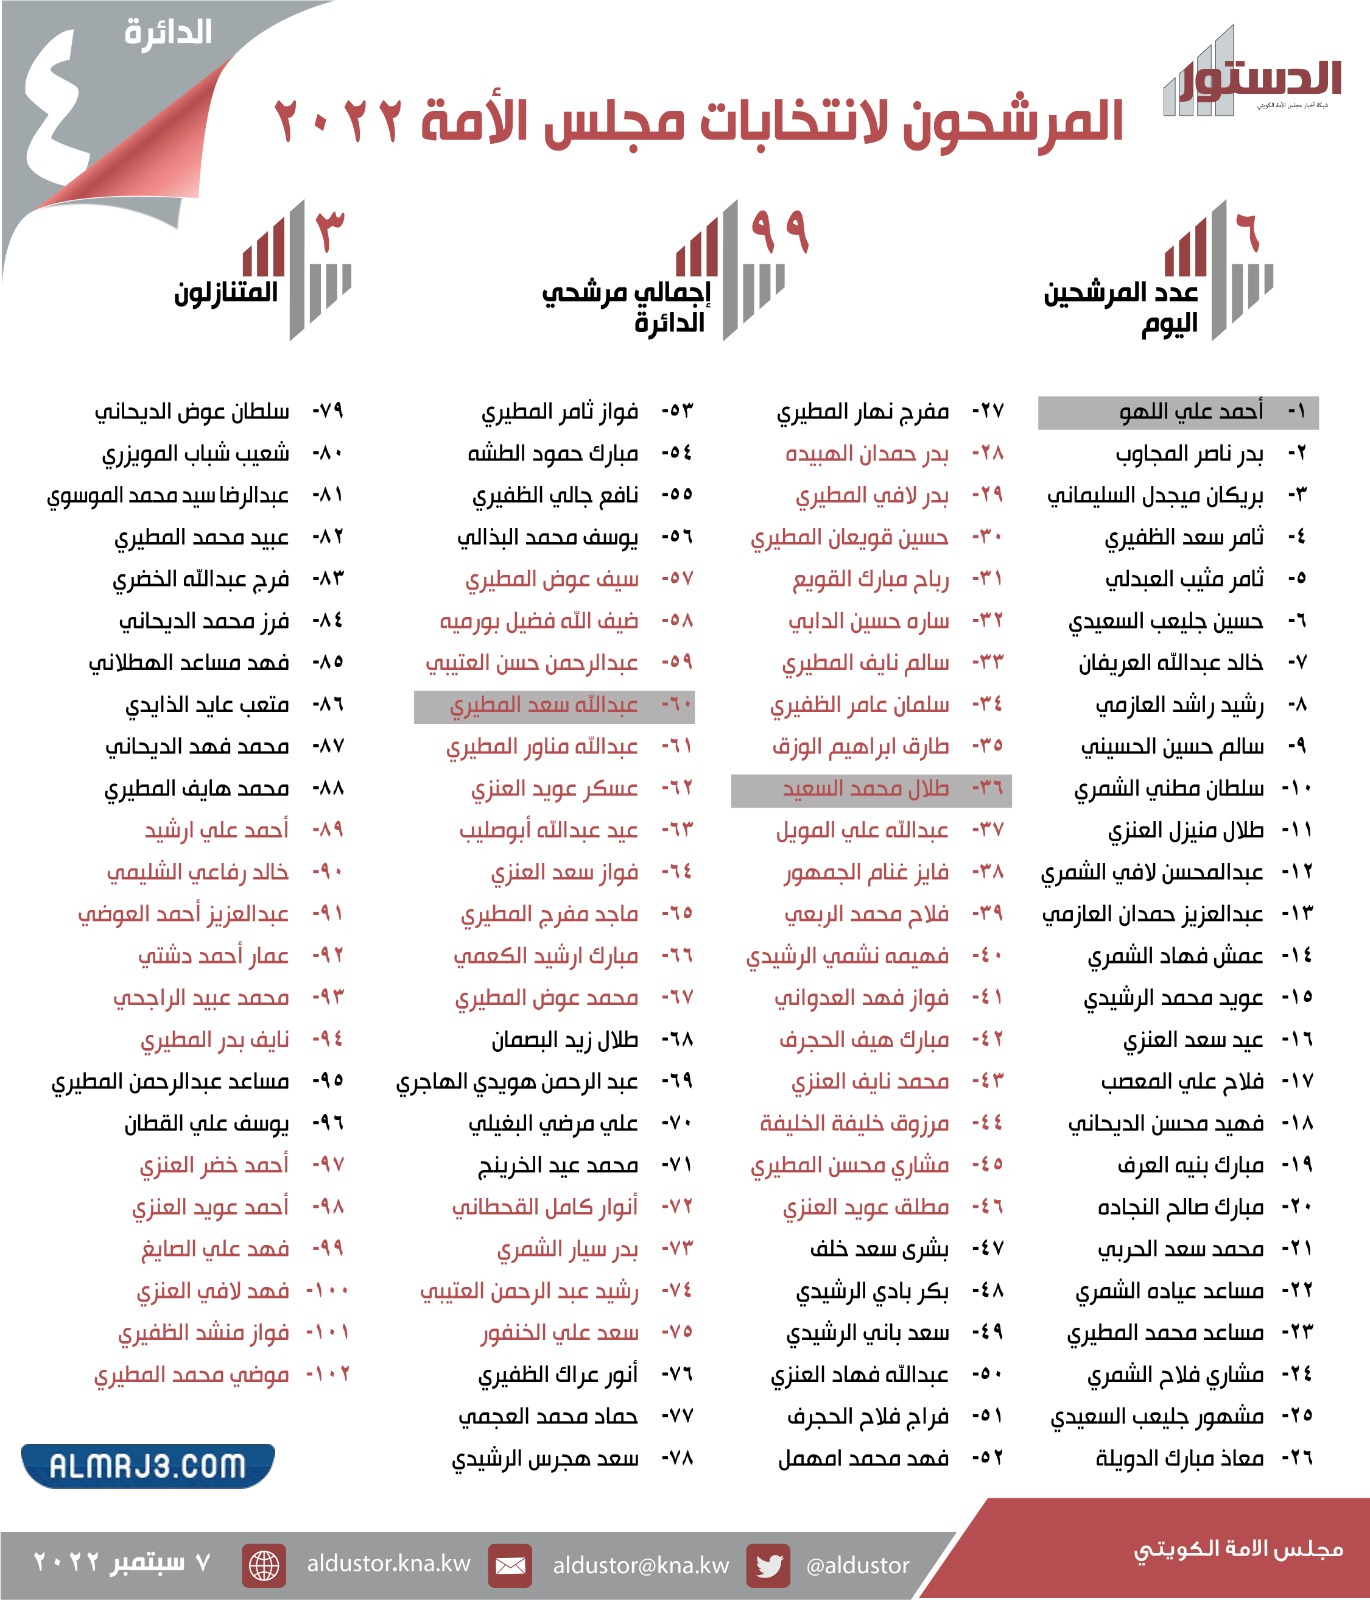 أسماء المرشحين لانتخابات مجلس الأمة 2022